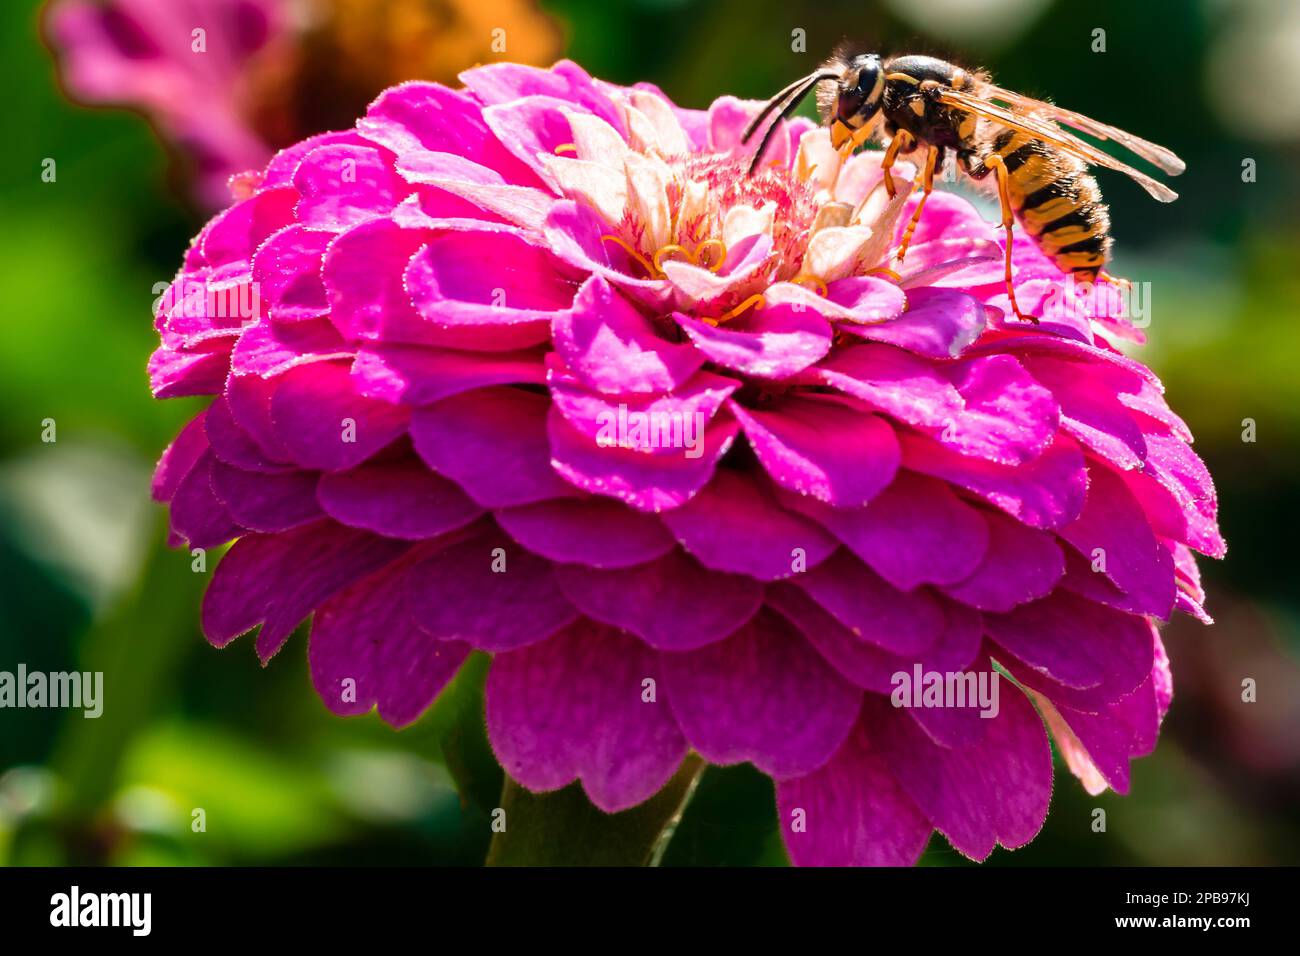 Primo piano di fiori di zinnia viola con una vespa. Fotografia con sfondo sfocato del giardino Foto Stock